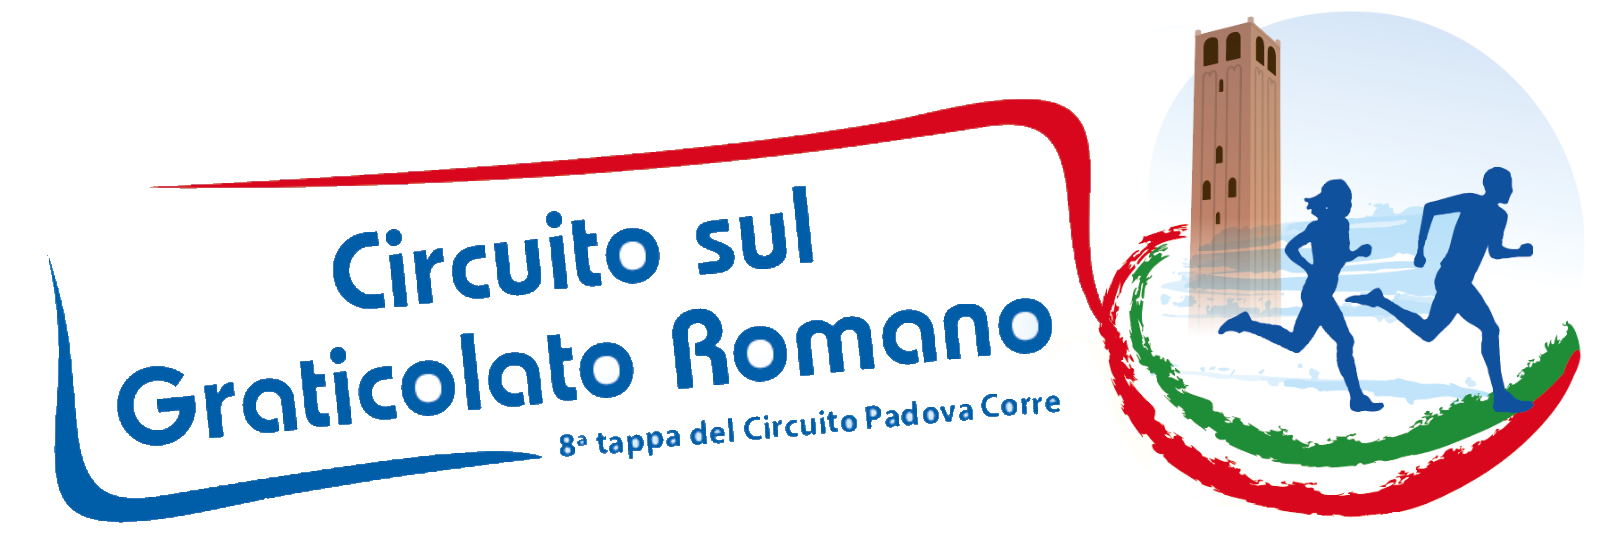 Logo Circuito sul graticolato romano